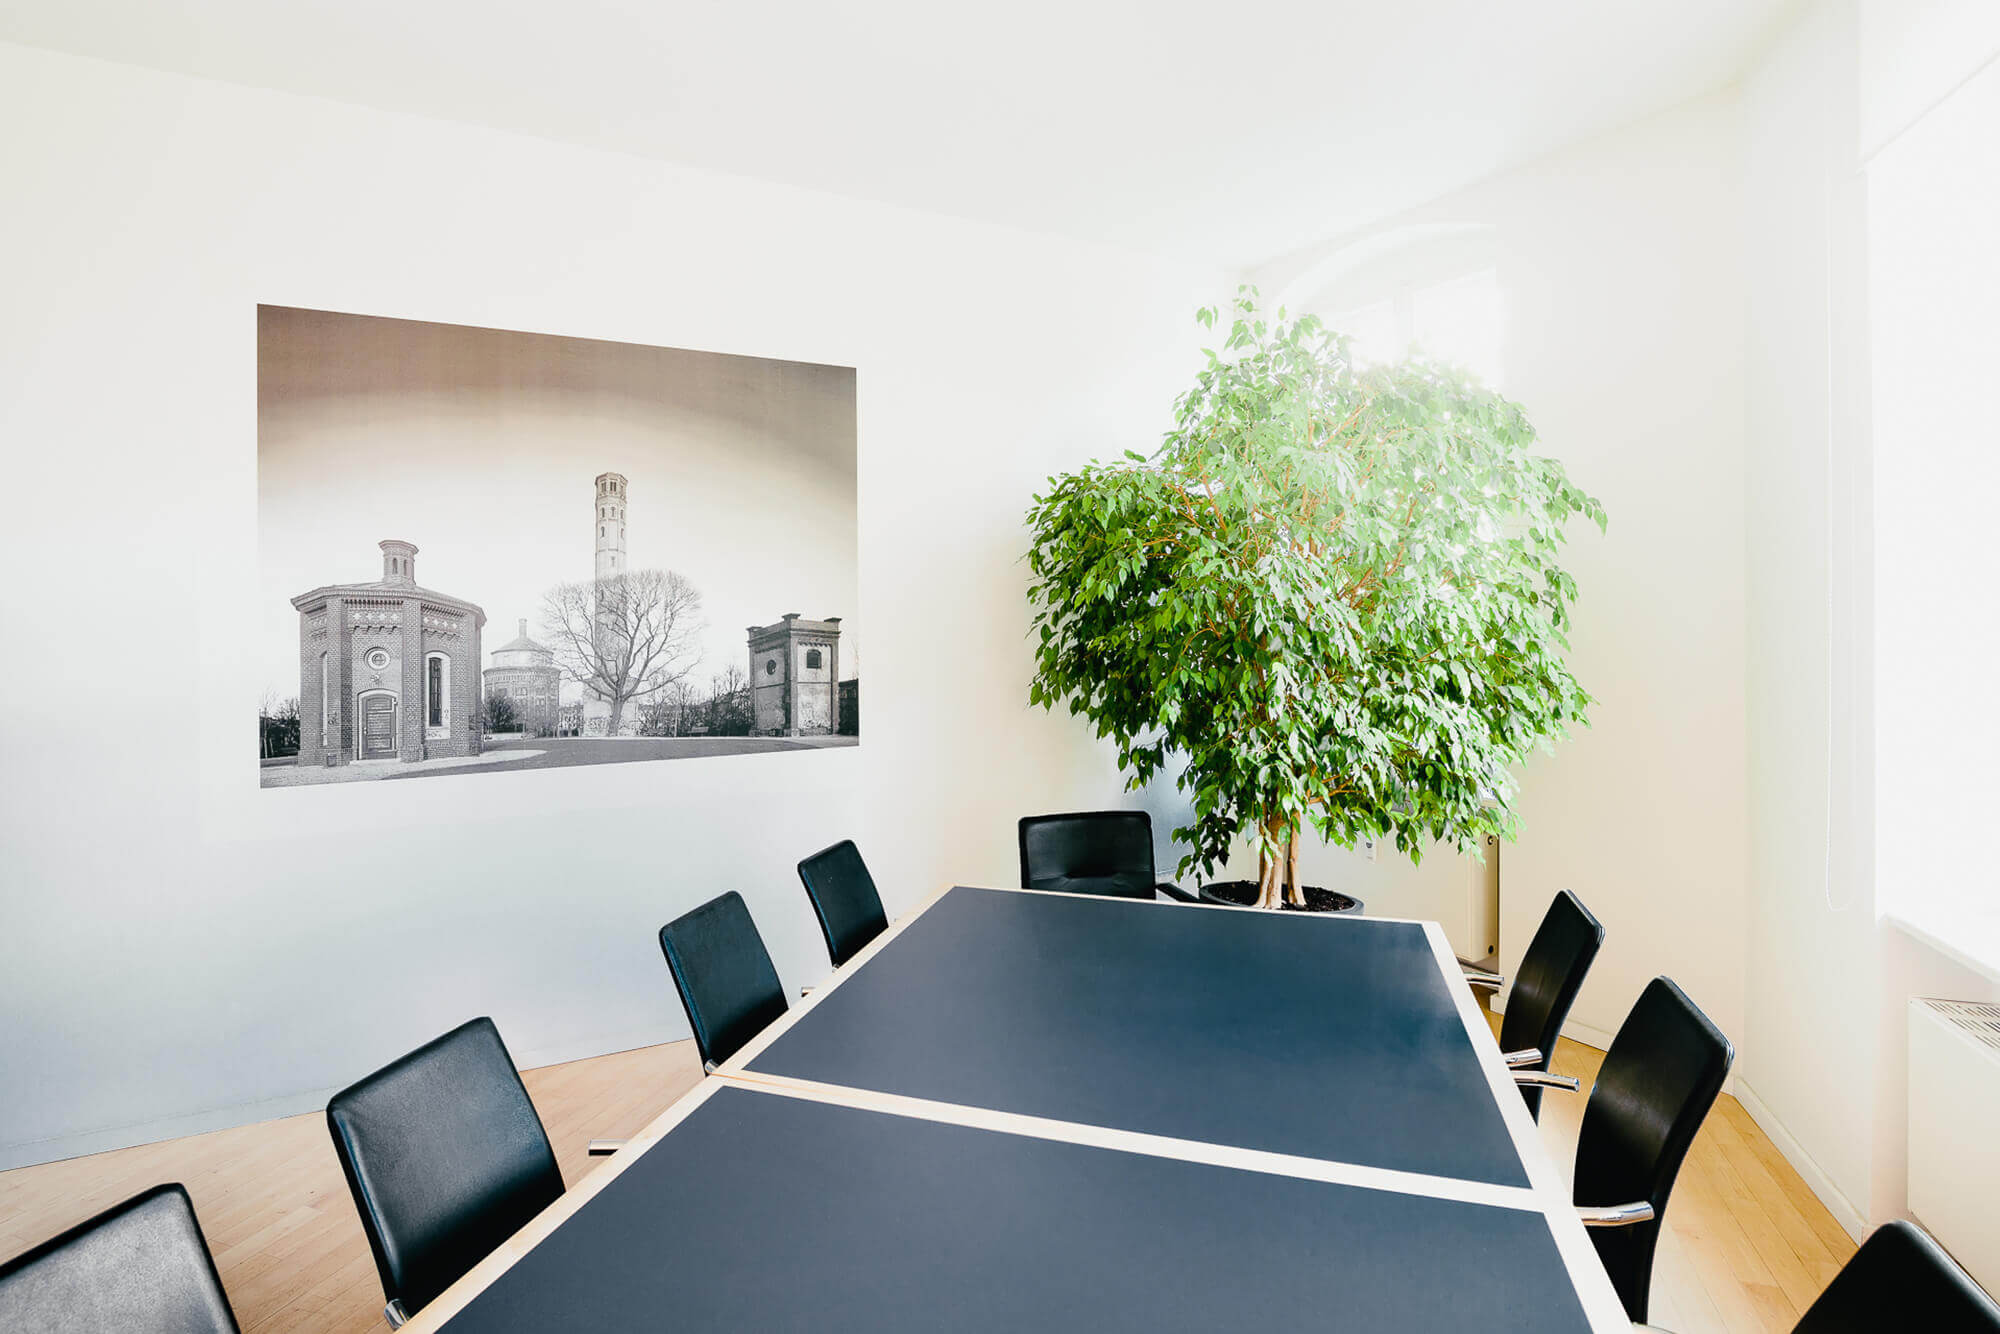 Besprechungsraum der Rechtsanwaltskanzlei in Berlin Krause, Creutzburg und Partner zeigt einen großen Tisch mit Stühlen und eine große Grünpflanze.